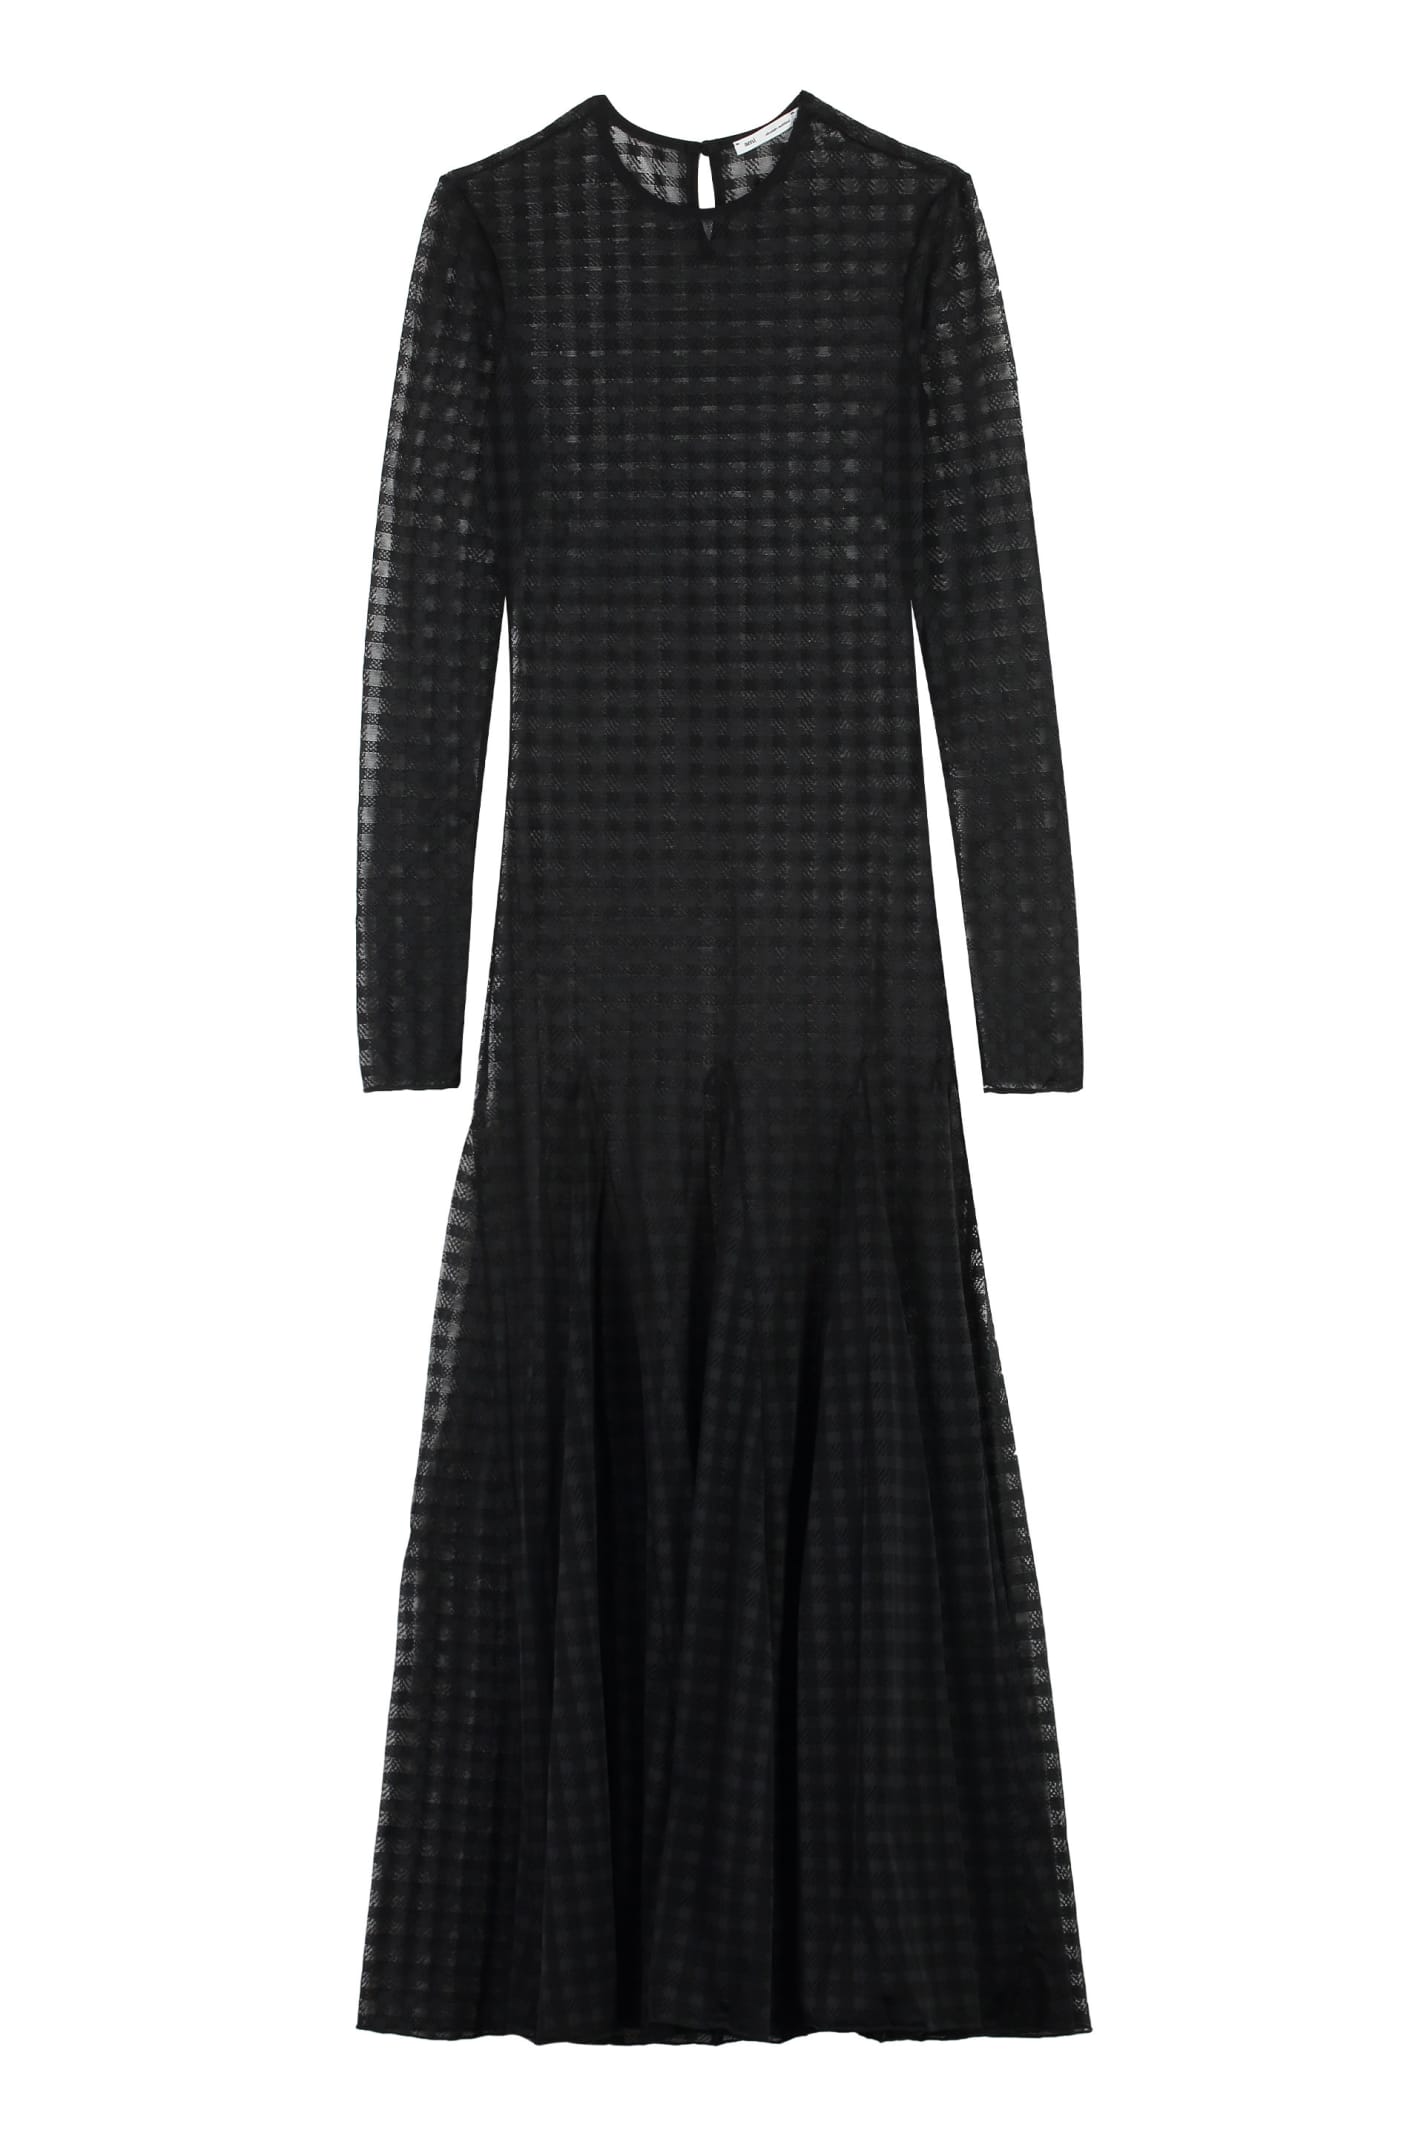 Shop Ami Alexandre Mattiussi Lace Midi Dress In Black